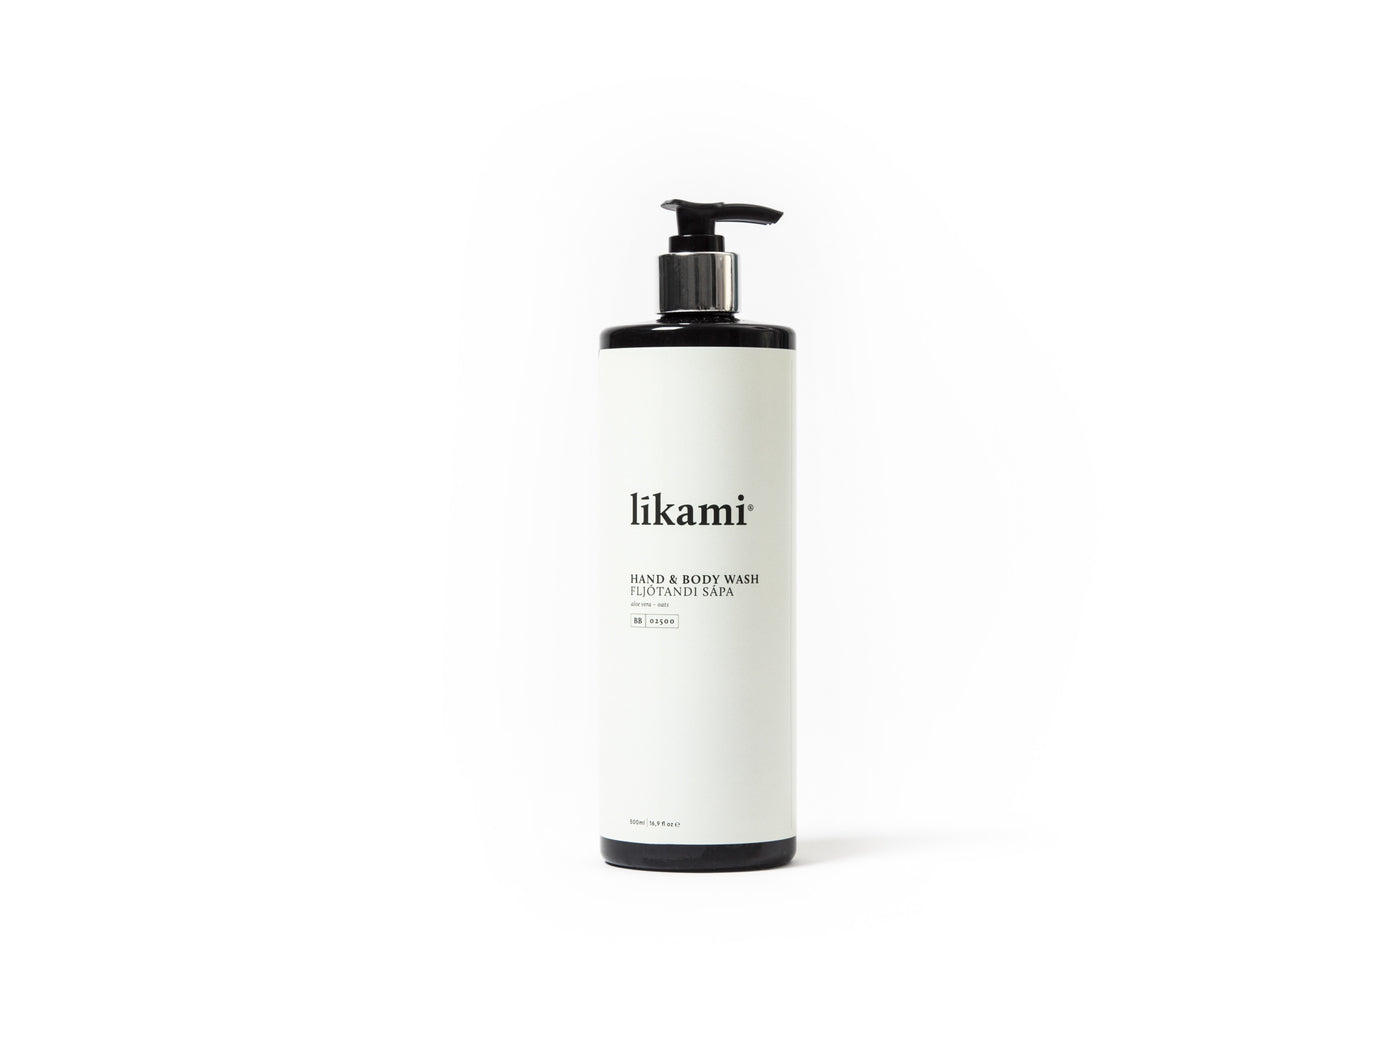 Likami Hand and Body Wash Aloe Vera - Oats